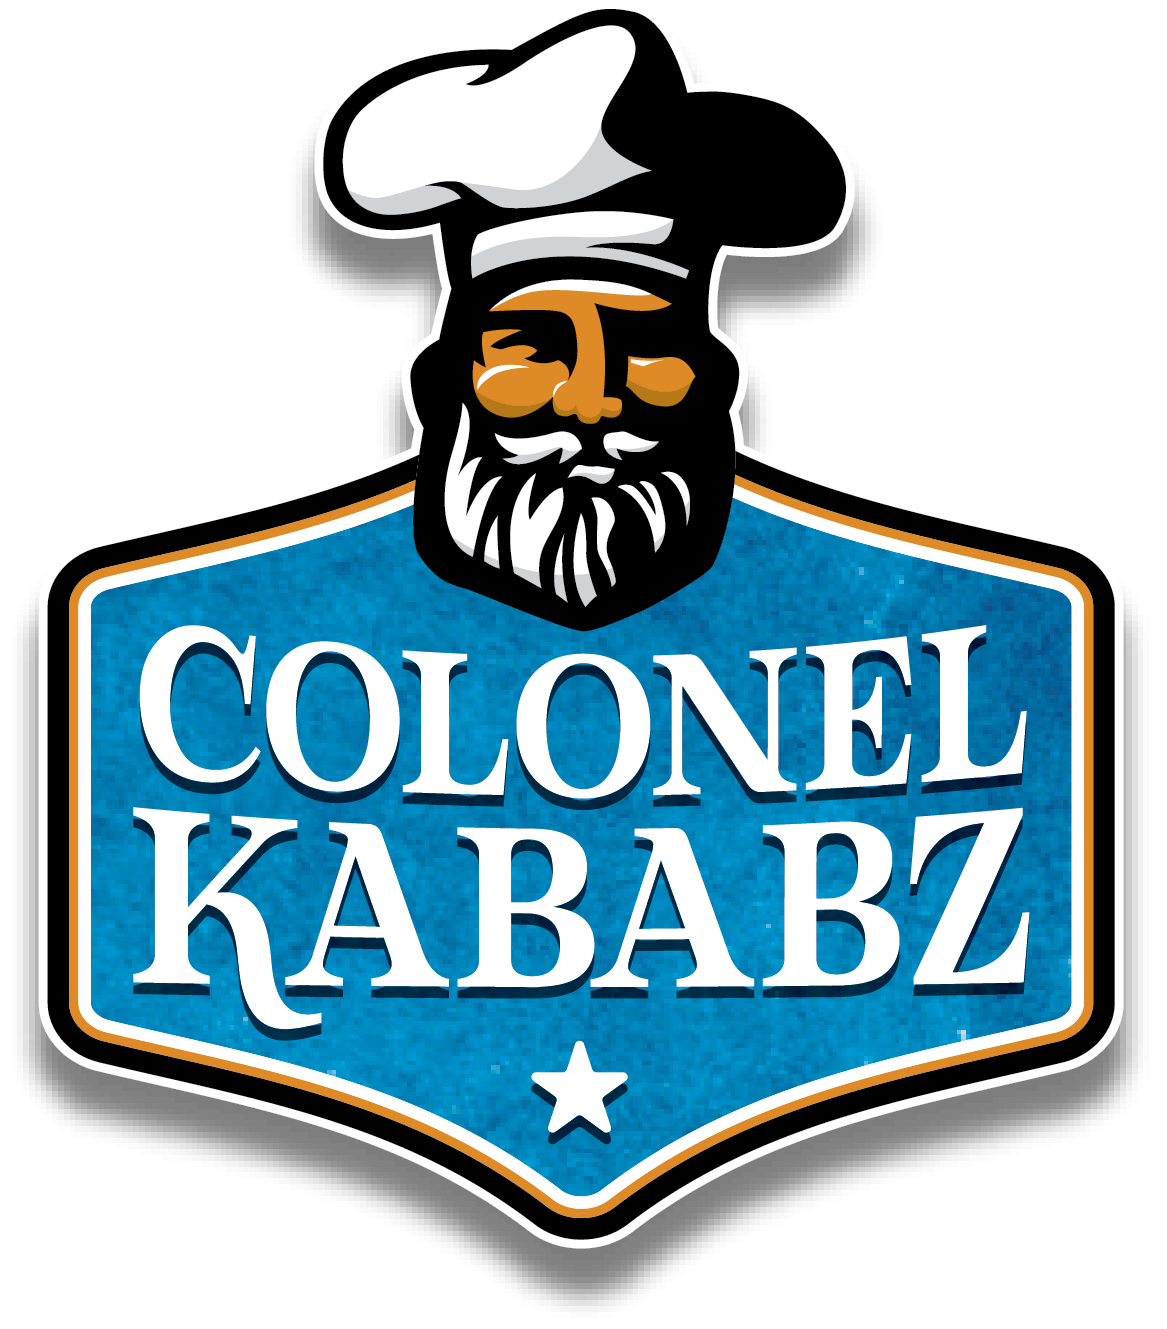 Colonel Kababz